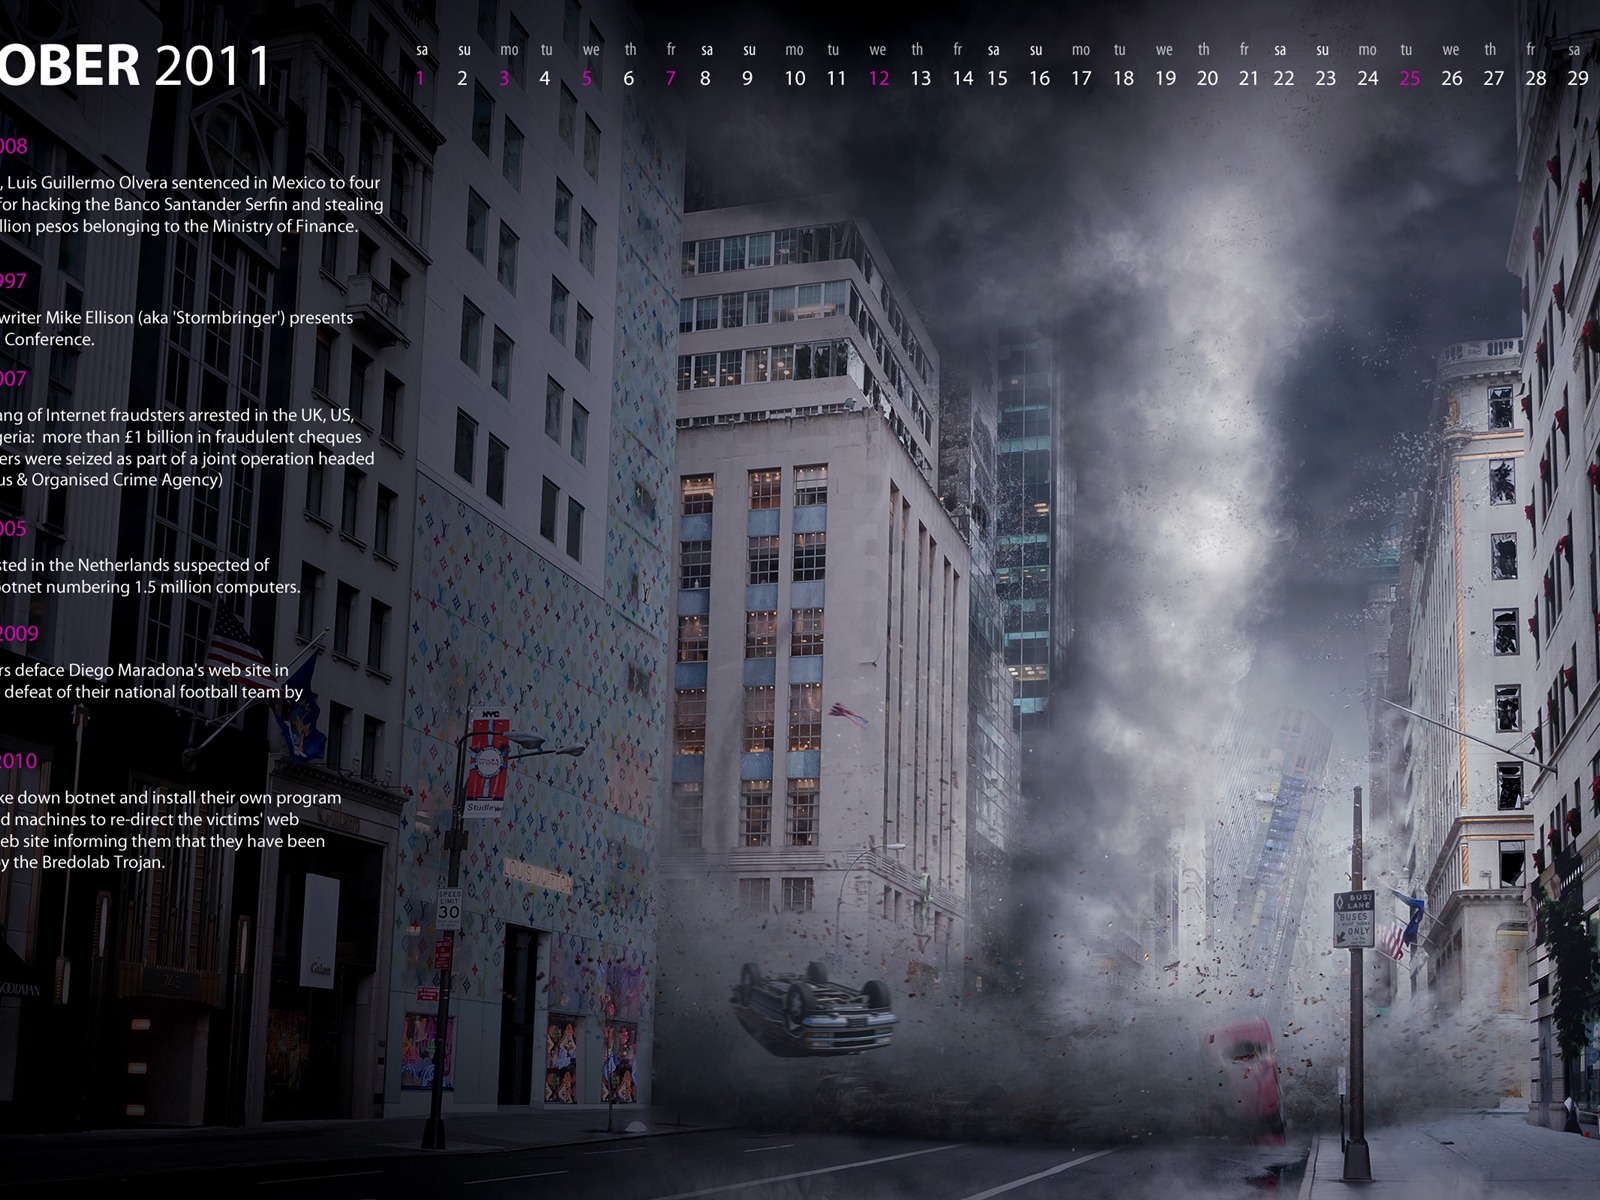 10 2011 Calendario Wallpaper (1) #2 - 1600x1200